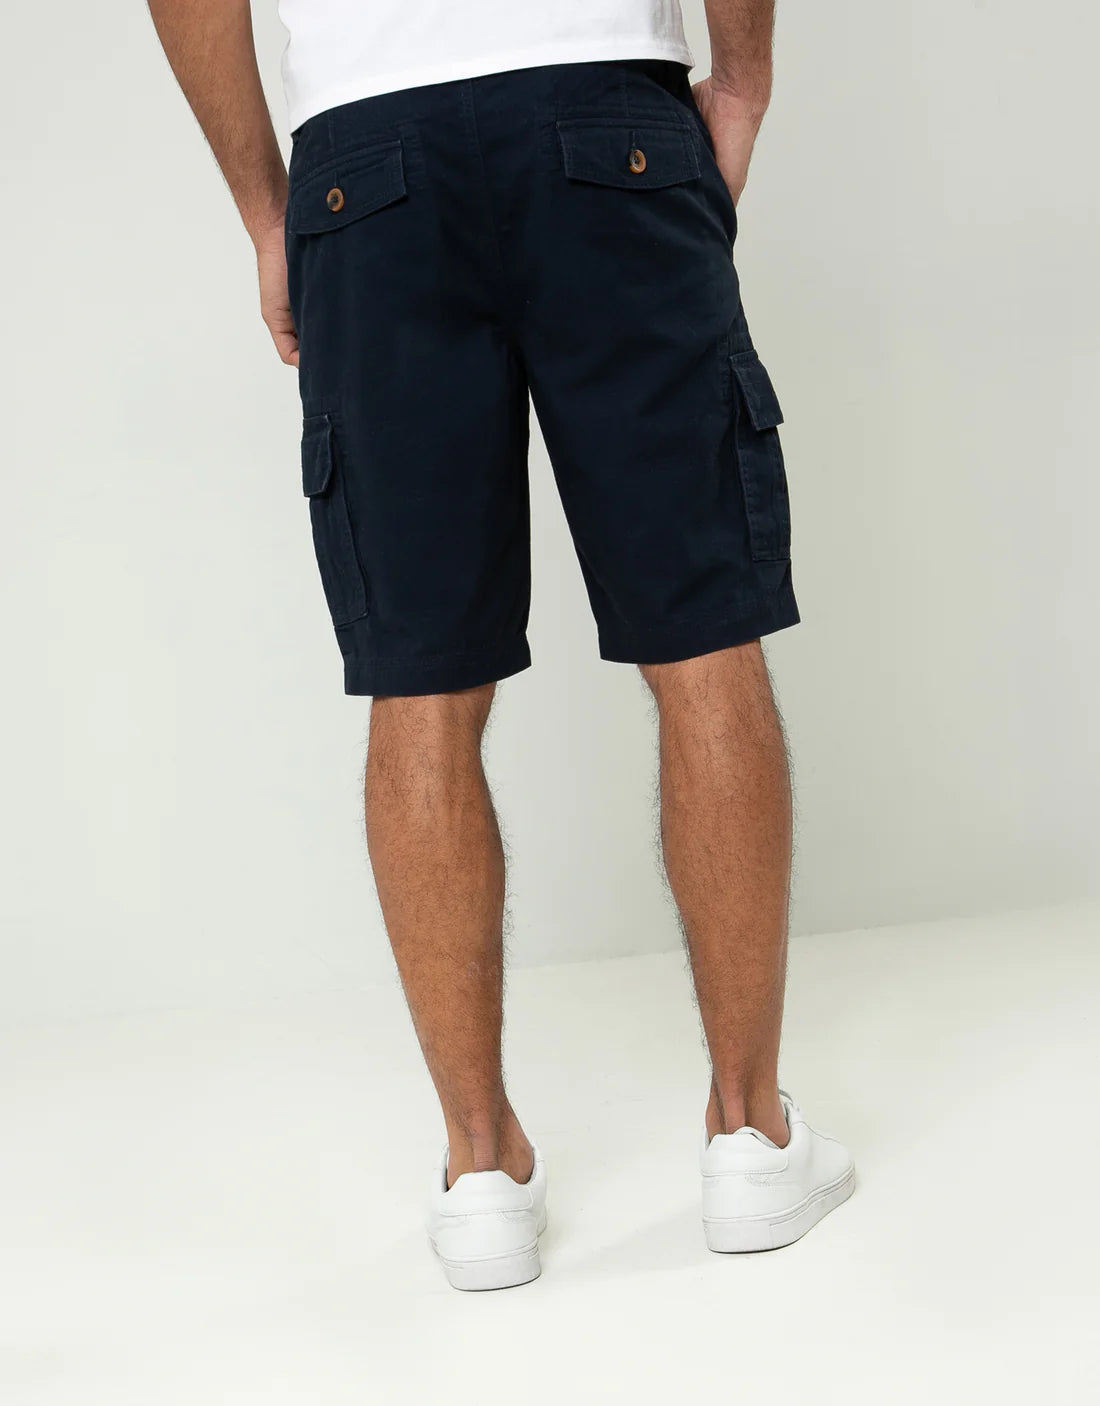 Theadbare Cargo Shorts Navy - Raw Menswear